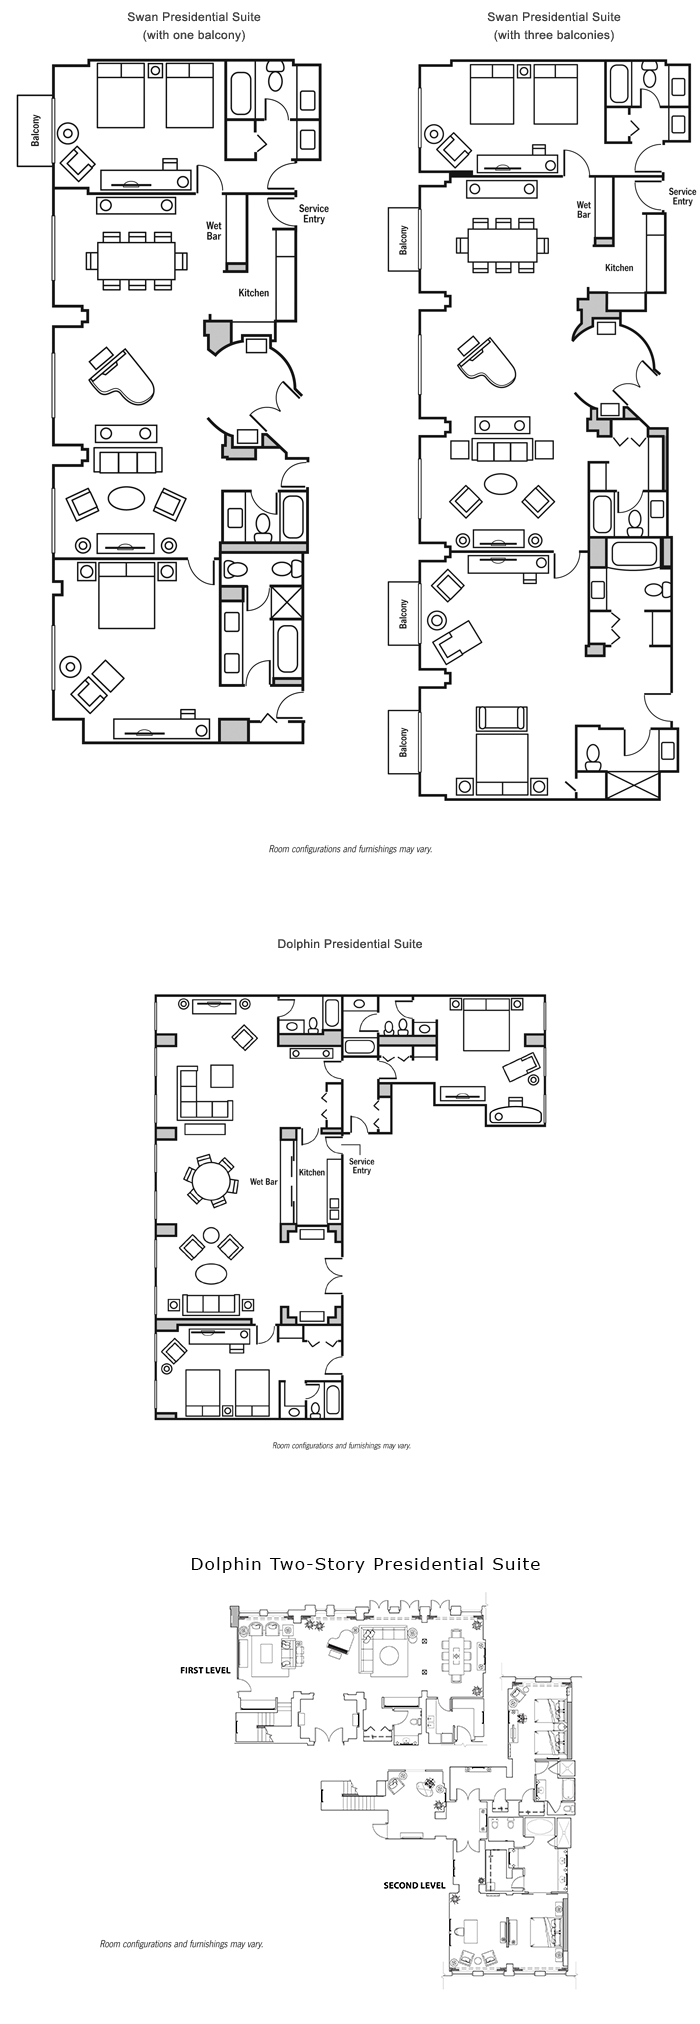 Presidential suite floor plan